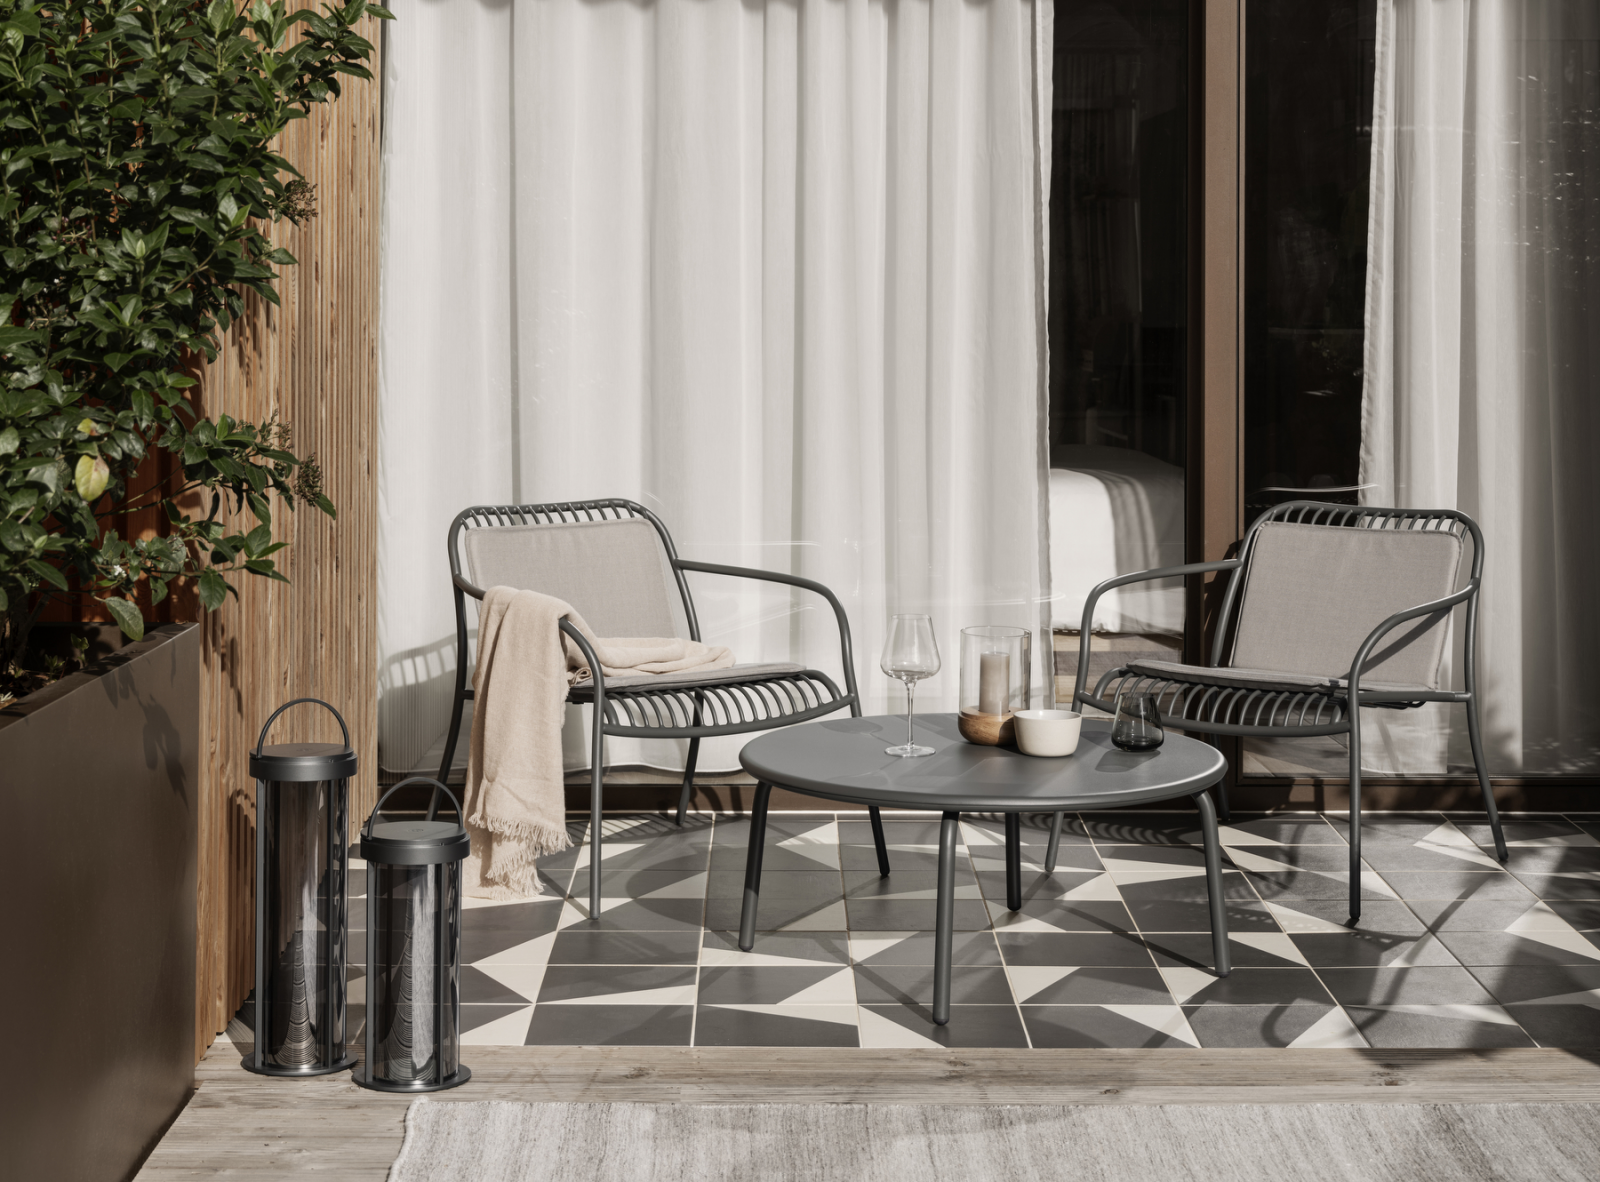 stay Outdoor Möbel, Lounge Möbel vom Hersteller kaufen, jetzt neues Sortiment